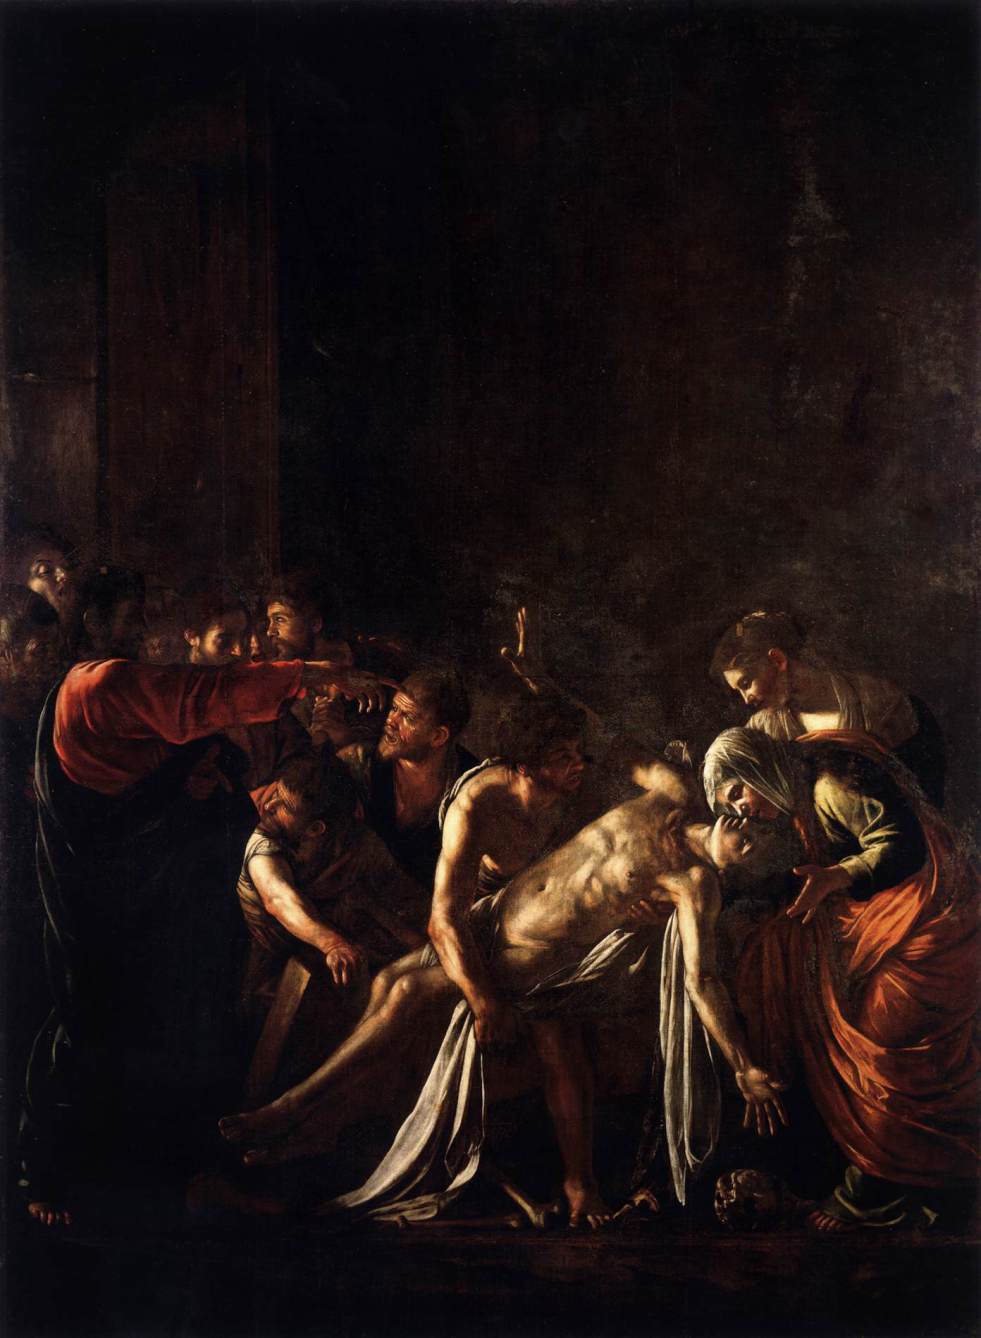 カラヴァッジョ　「ラザロの蘇生 」1608-09　　Oil on canvas, 380 x 275 cm　　メッシーナ美術館